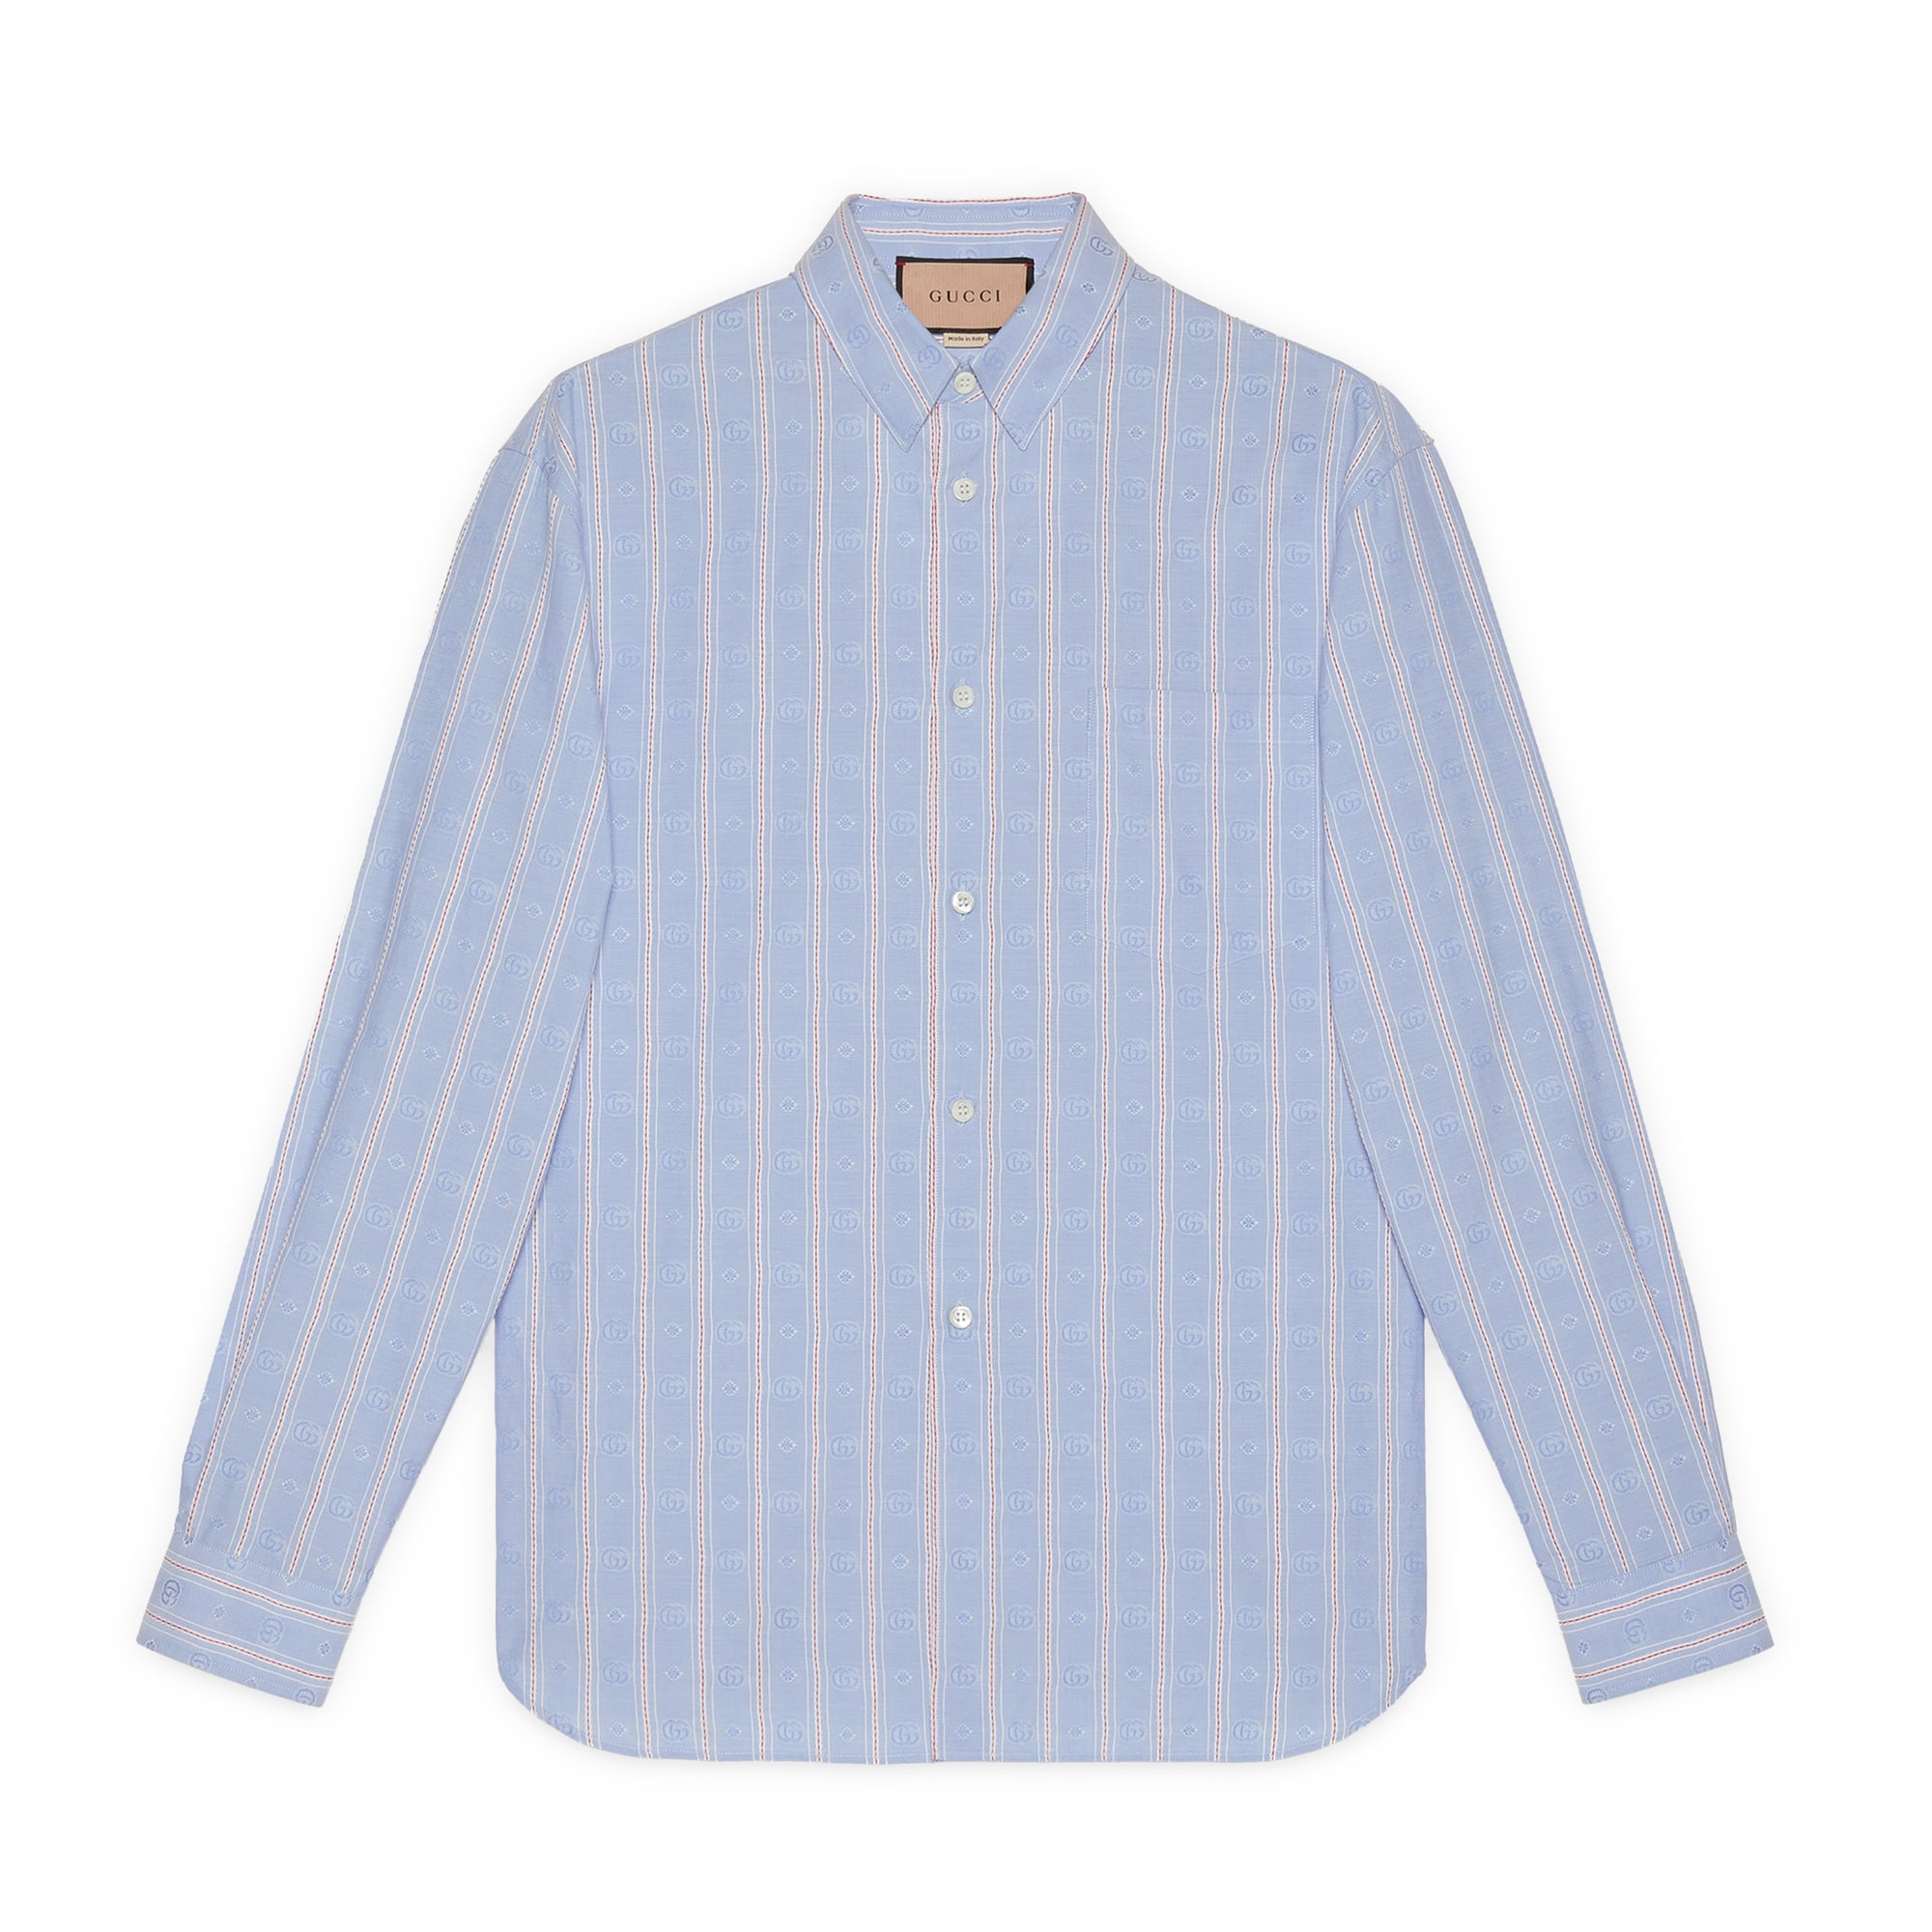 Gucci - Men’s Striped Double G Cotton Shirt - (Light Blue) view 1